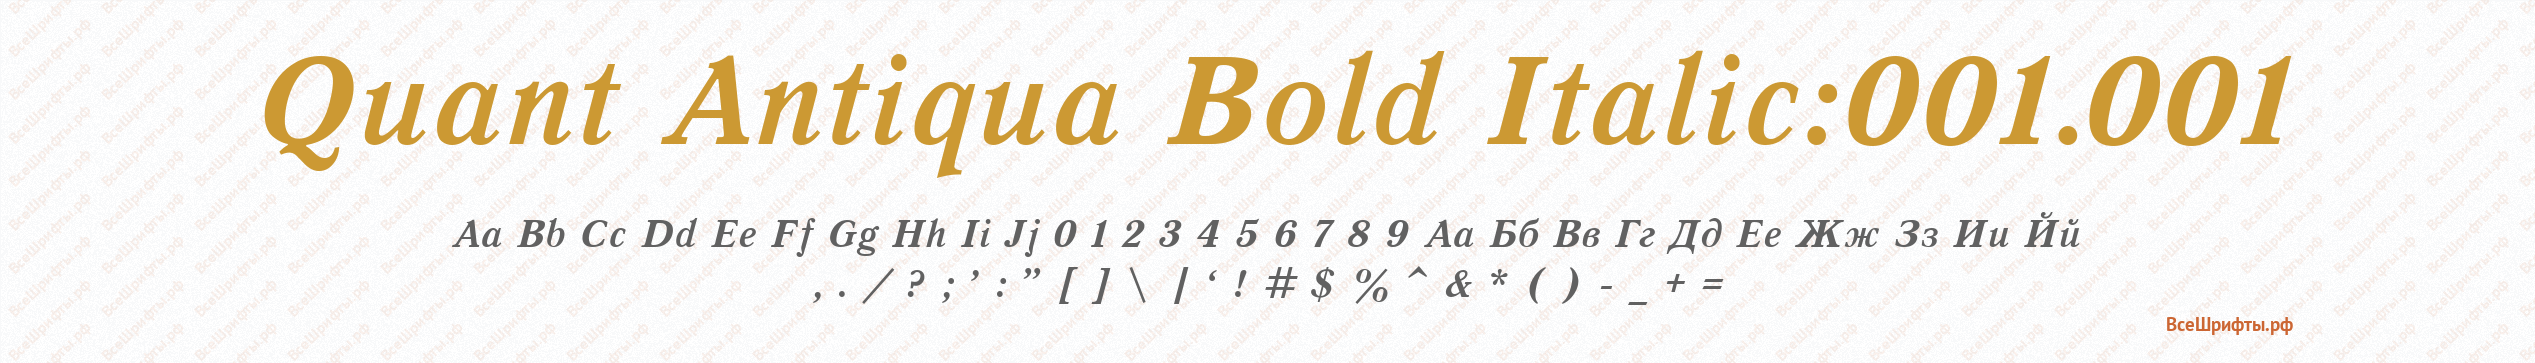 Шрифт Quant Antiqua Bold Italic:001.001